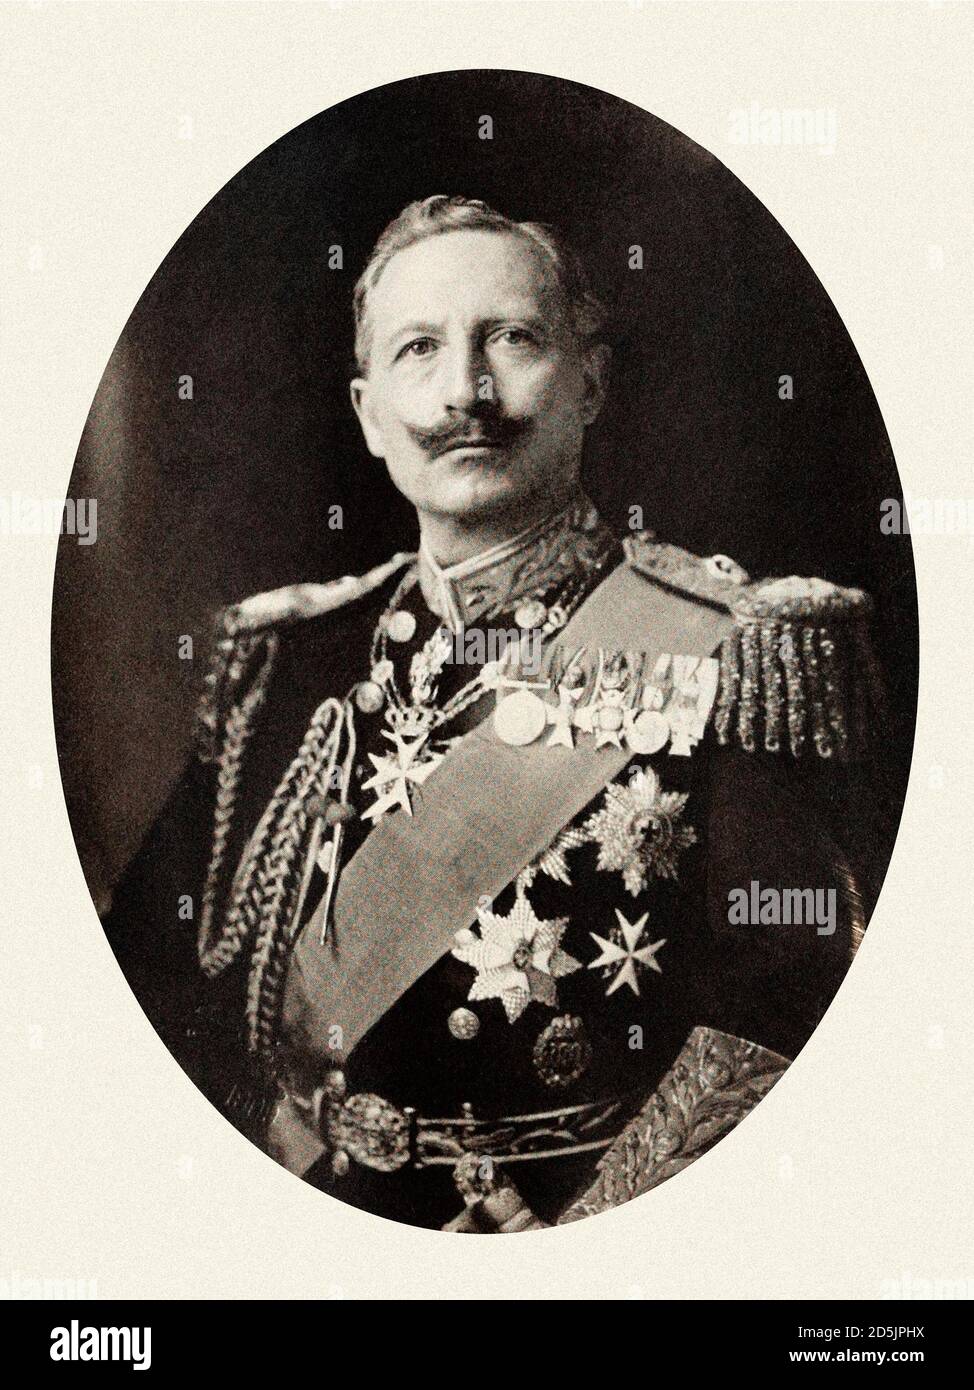 Guglielmo II o Guglielmo II (1859 – 4 giugno 1941) l'ultimo imperatore tedesco (Kaiser) e re di Prussia. Regnò dal 15 giugno 1888 fino alla sua abdicazione Foto Stock